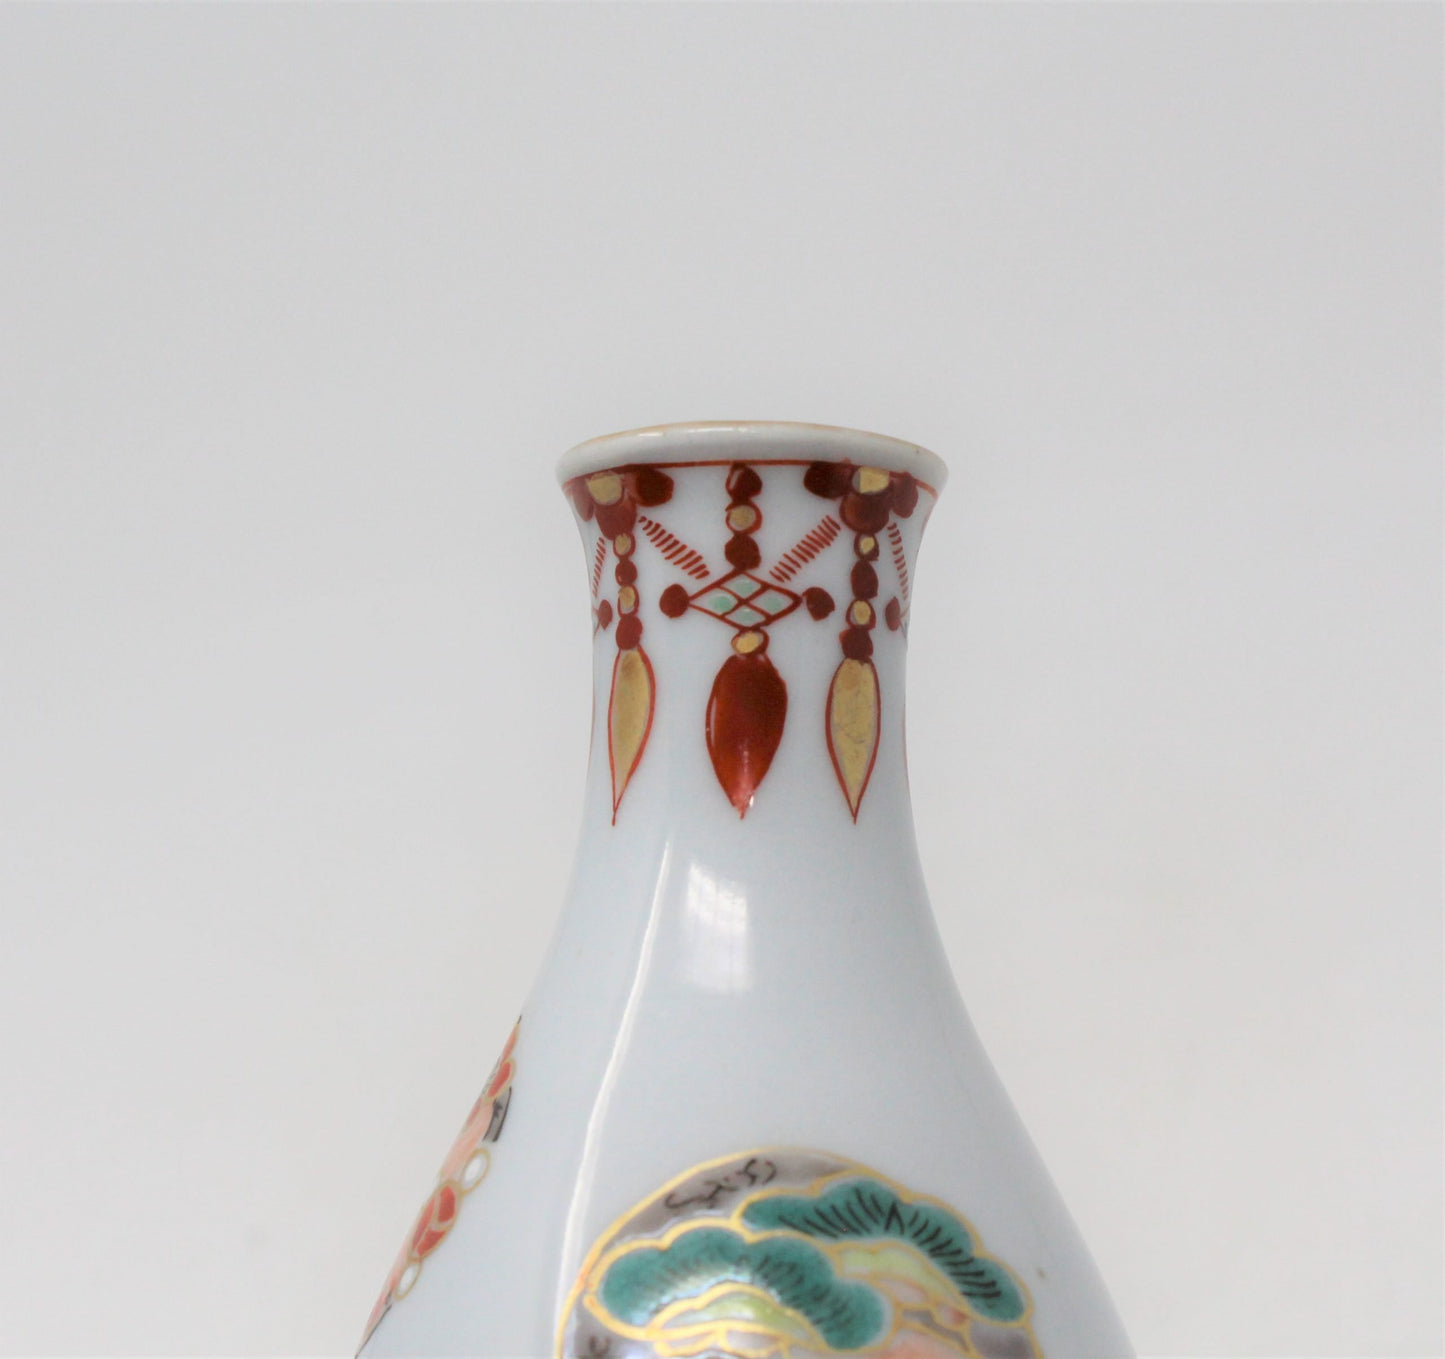 Sake Decanter / Tokkuri, Japanese Symbols, Vintage Porcelain